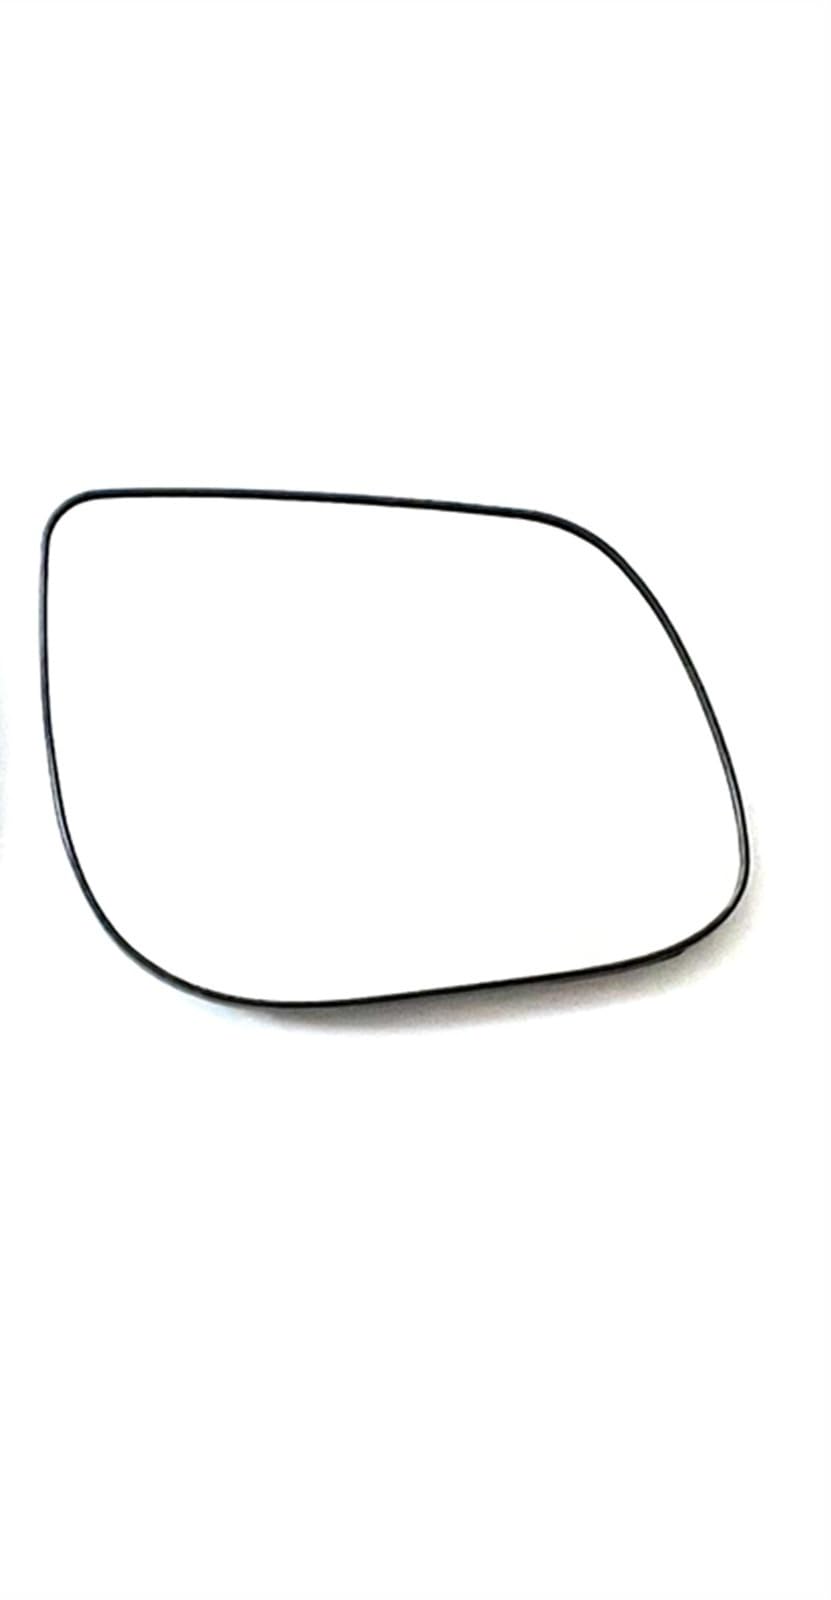 Für HYUNDAI Für I10 2011 2012 2013 2014 2015 2016 Beheiztes Konvexes Türspiegelglas Auto Spiegelglas Außenpiegel Spiegelglas (Farbe : Recht) von SPREKS